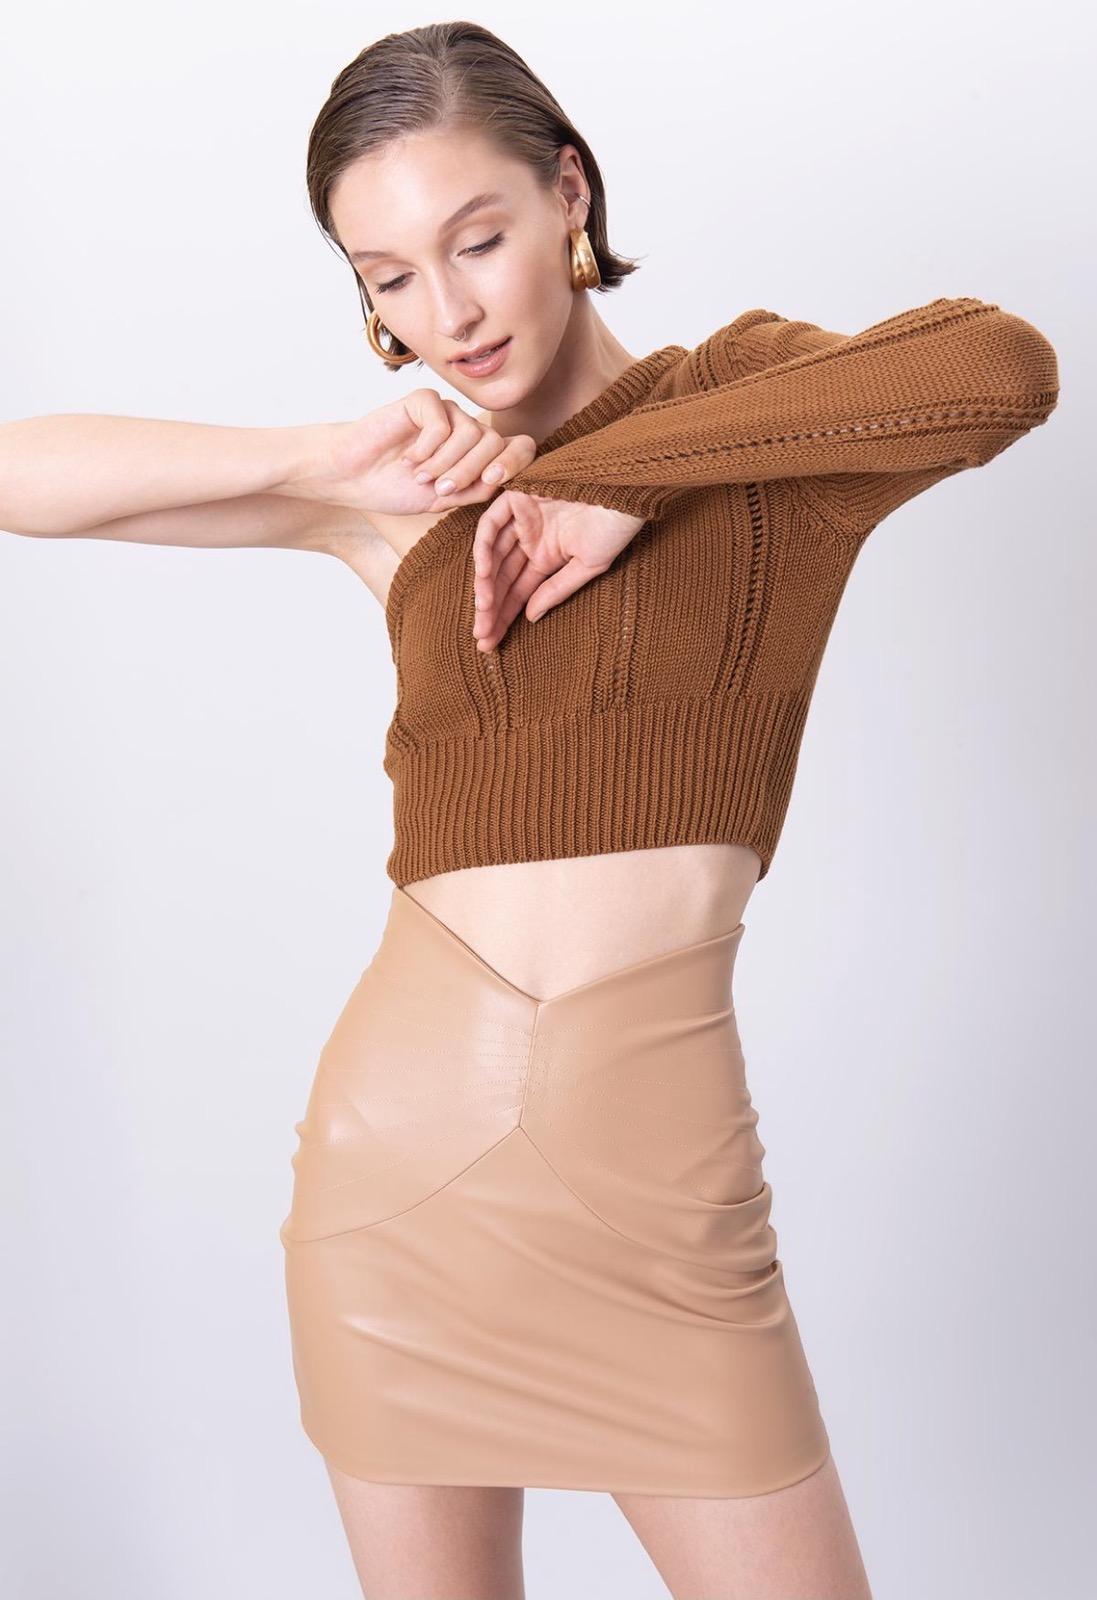 Дамски пуловер BELLA  https://bvseductive.com/products/дамски-пуловер-bella  100% акрил атрактивен къс дамски пуловер с един ръкав в кафяв цвят тренди предложение за вашата визия